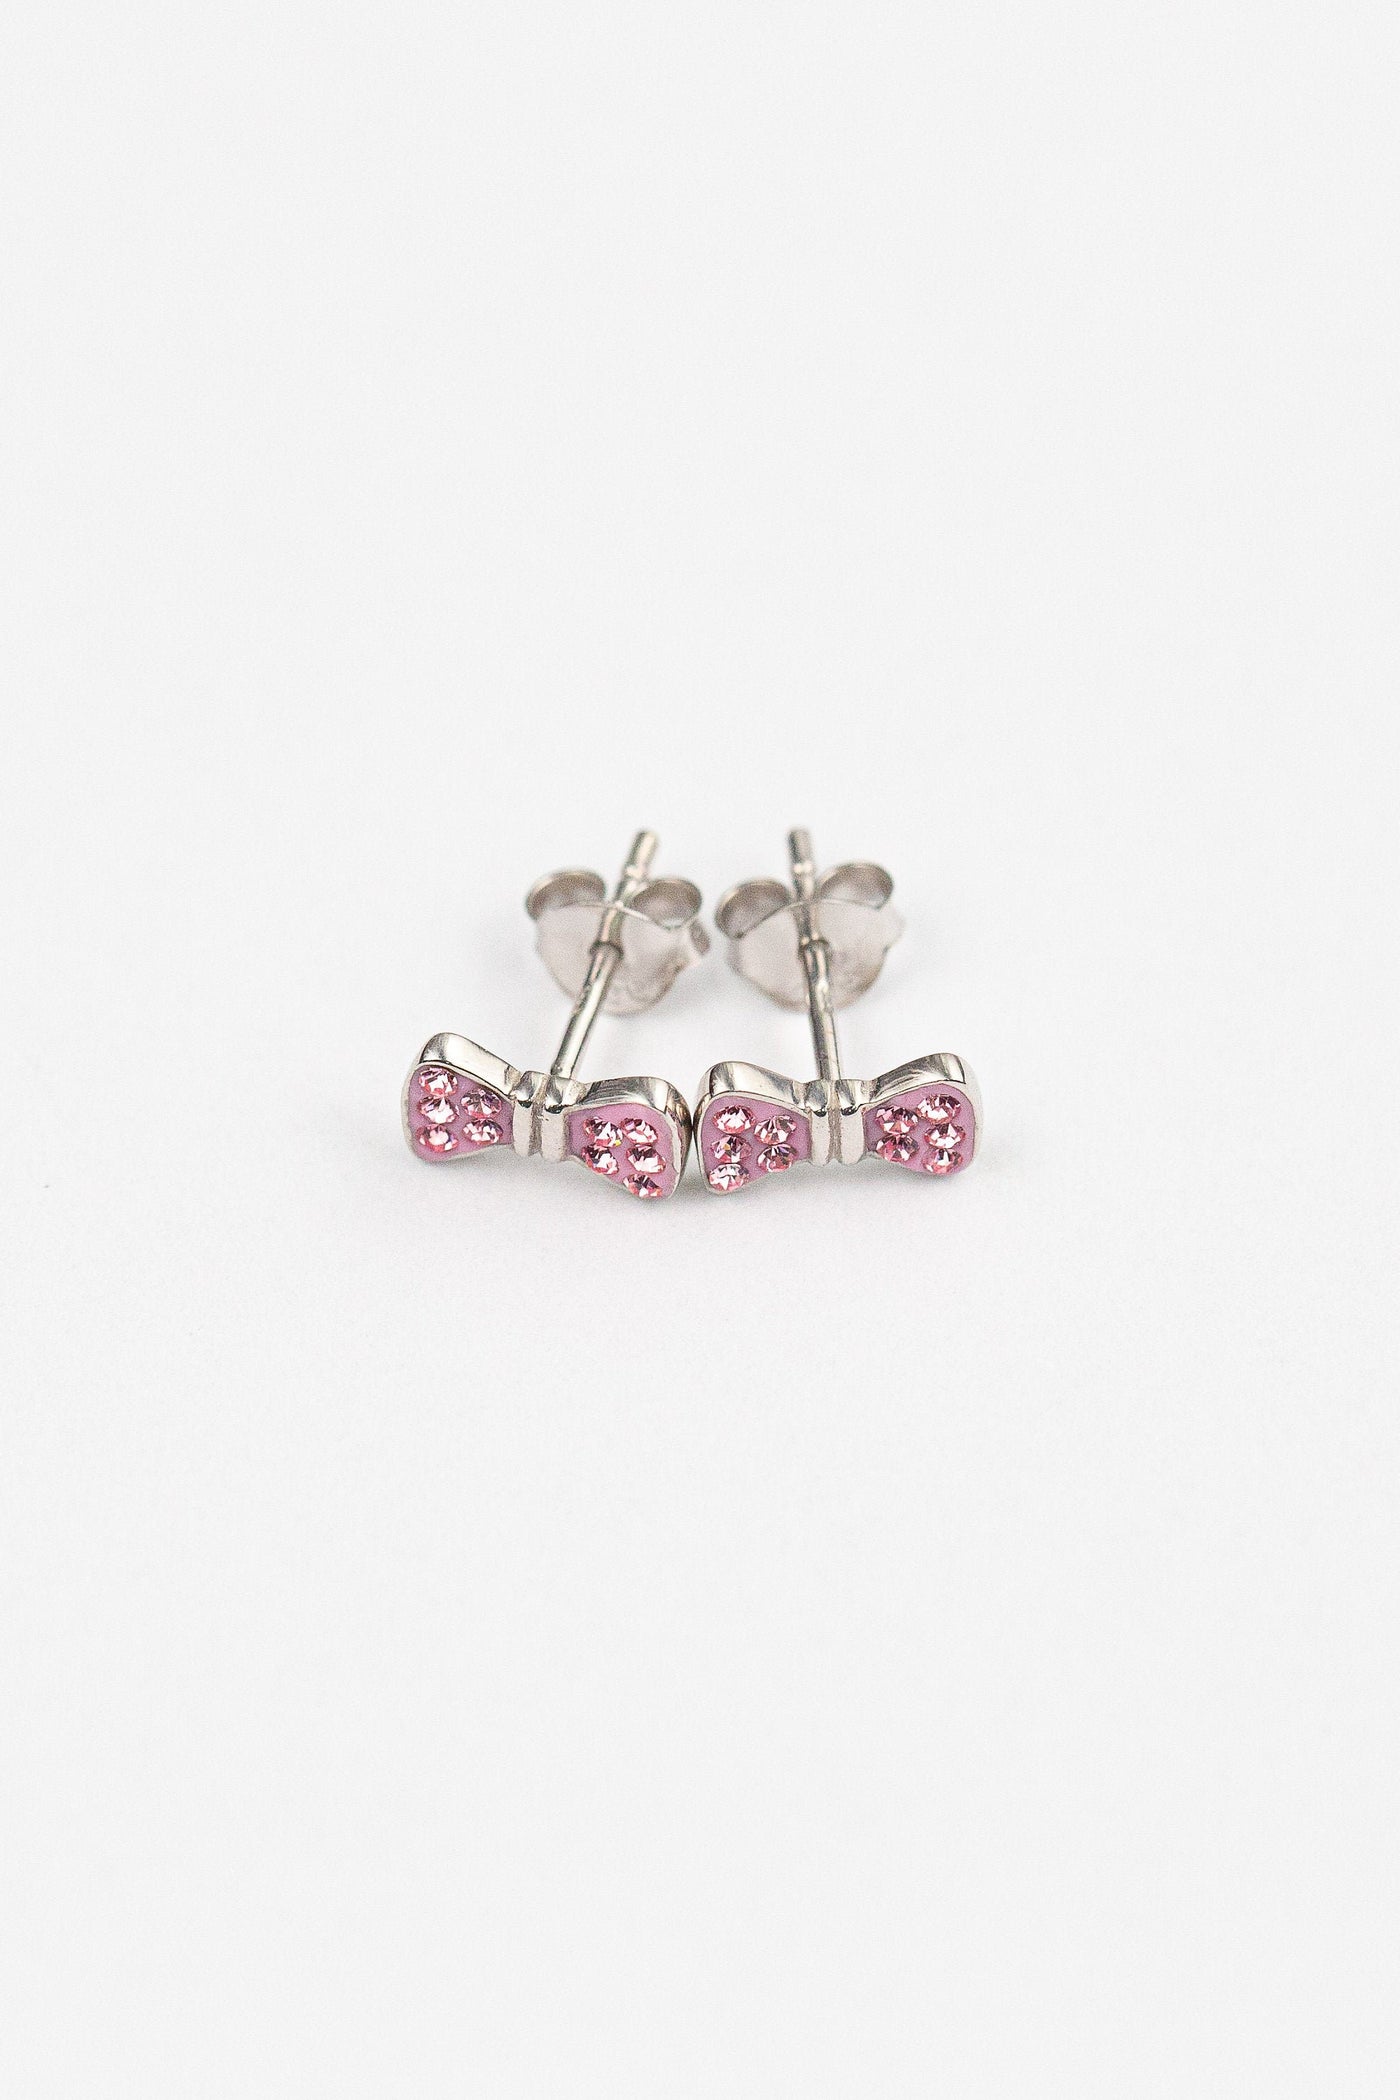 Bow Crystal Silver Stud Earrings in Light Pink | Annie and Sisters | sister stud earrings, for kids, children's jewelry, kid's jewelry, best friend